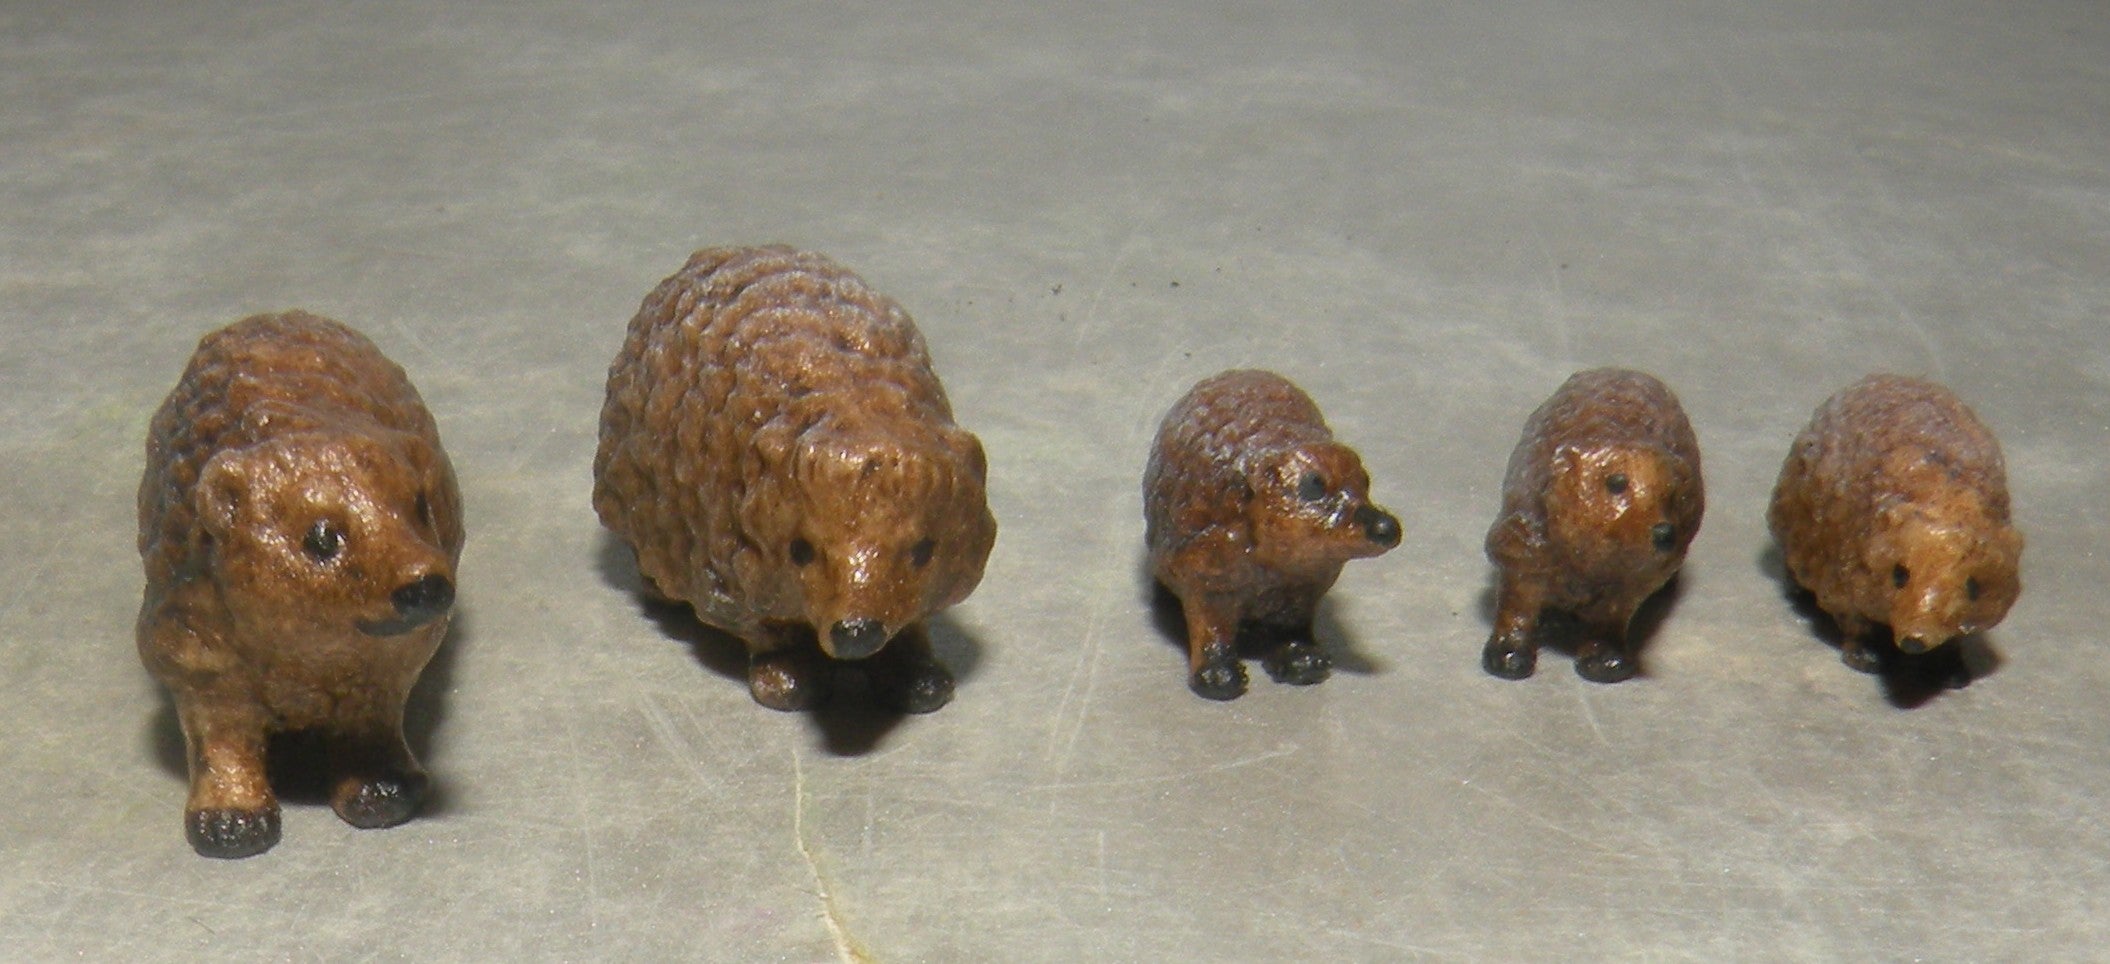 Hedgehog Family, Kastlunger